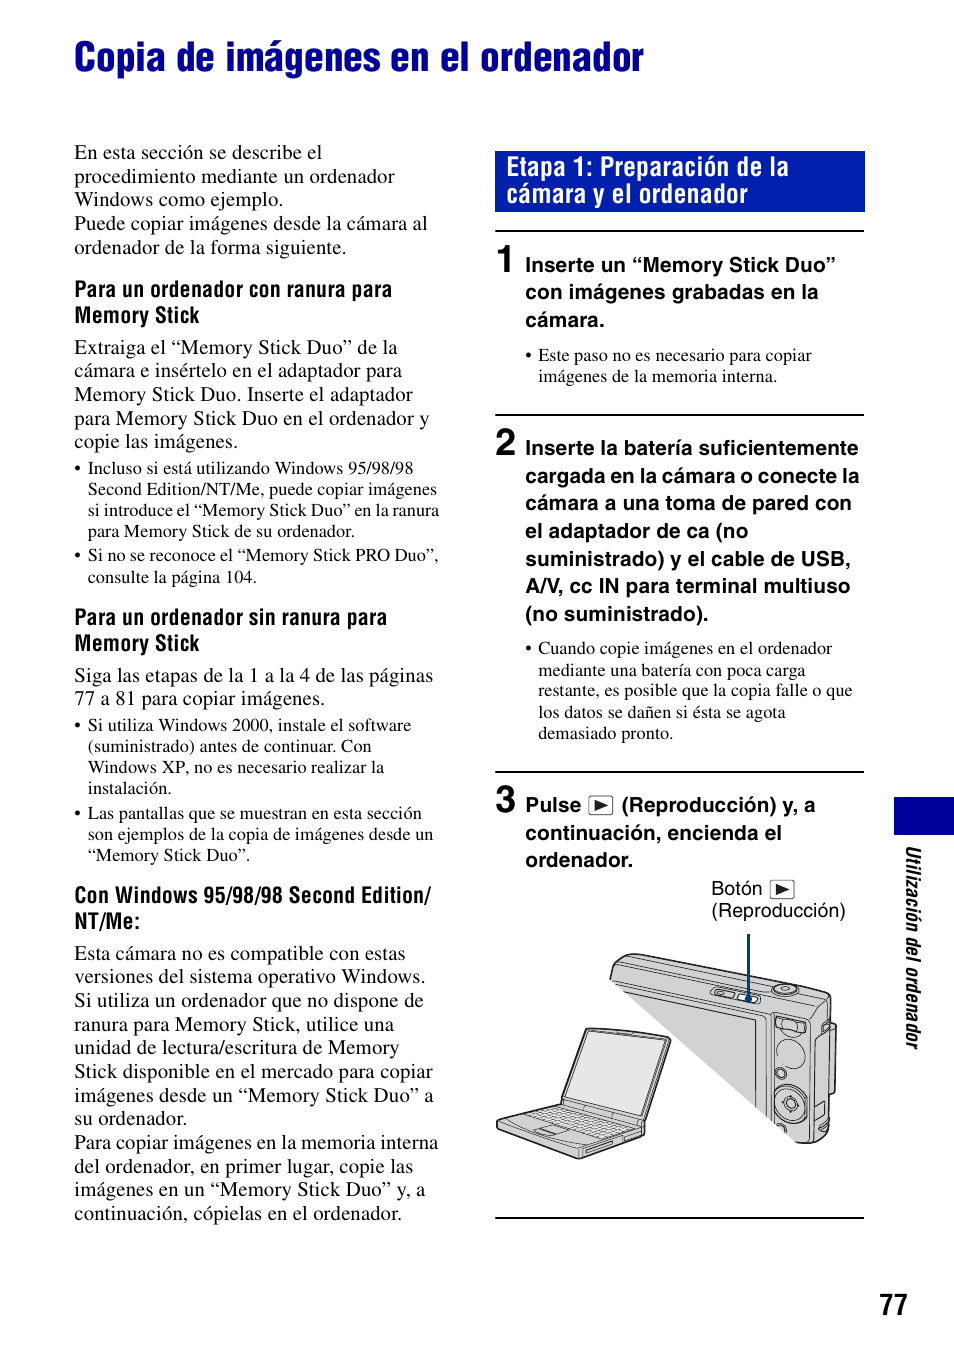 Copia de imágenes en el ordenador, Etapa 1: preparación de la cámara y el ordenador | Sony DSC-T100 Manual del usuario | Página 77 / 123